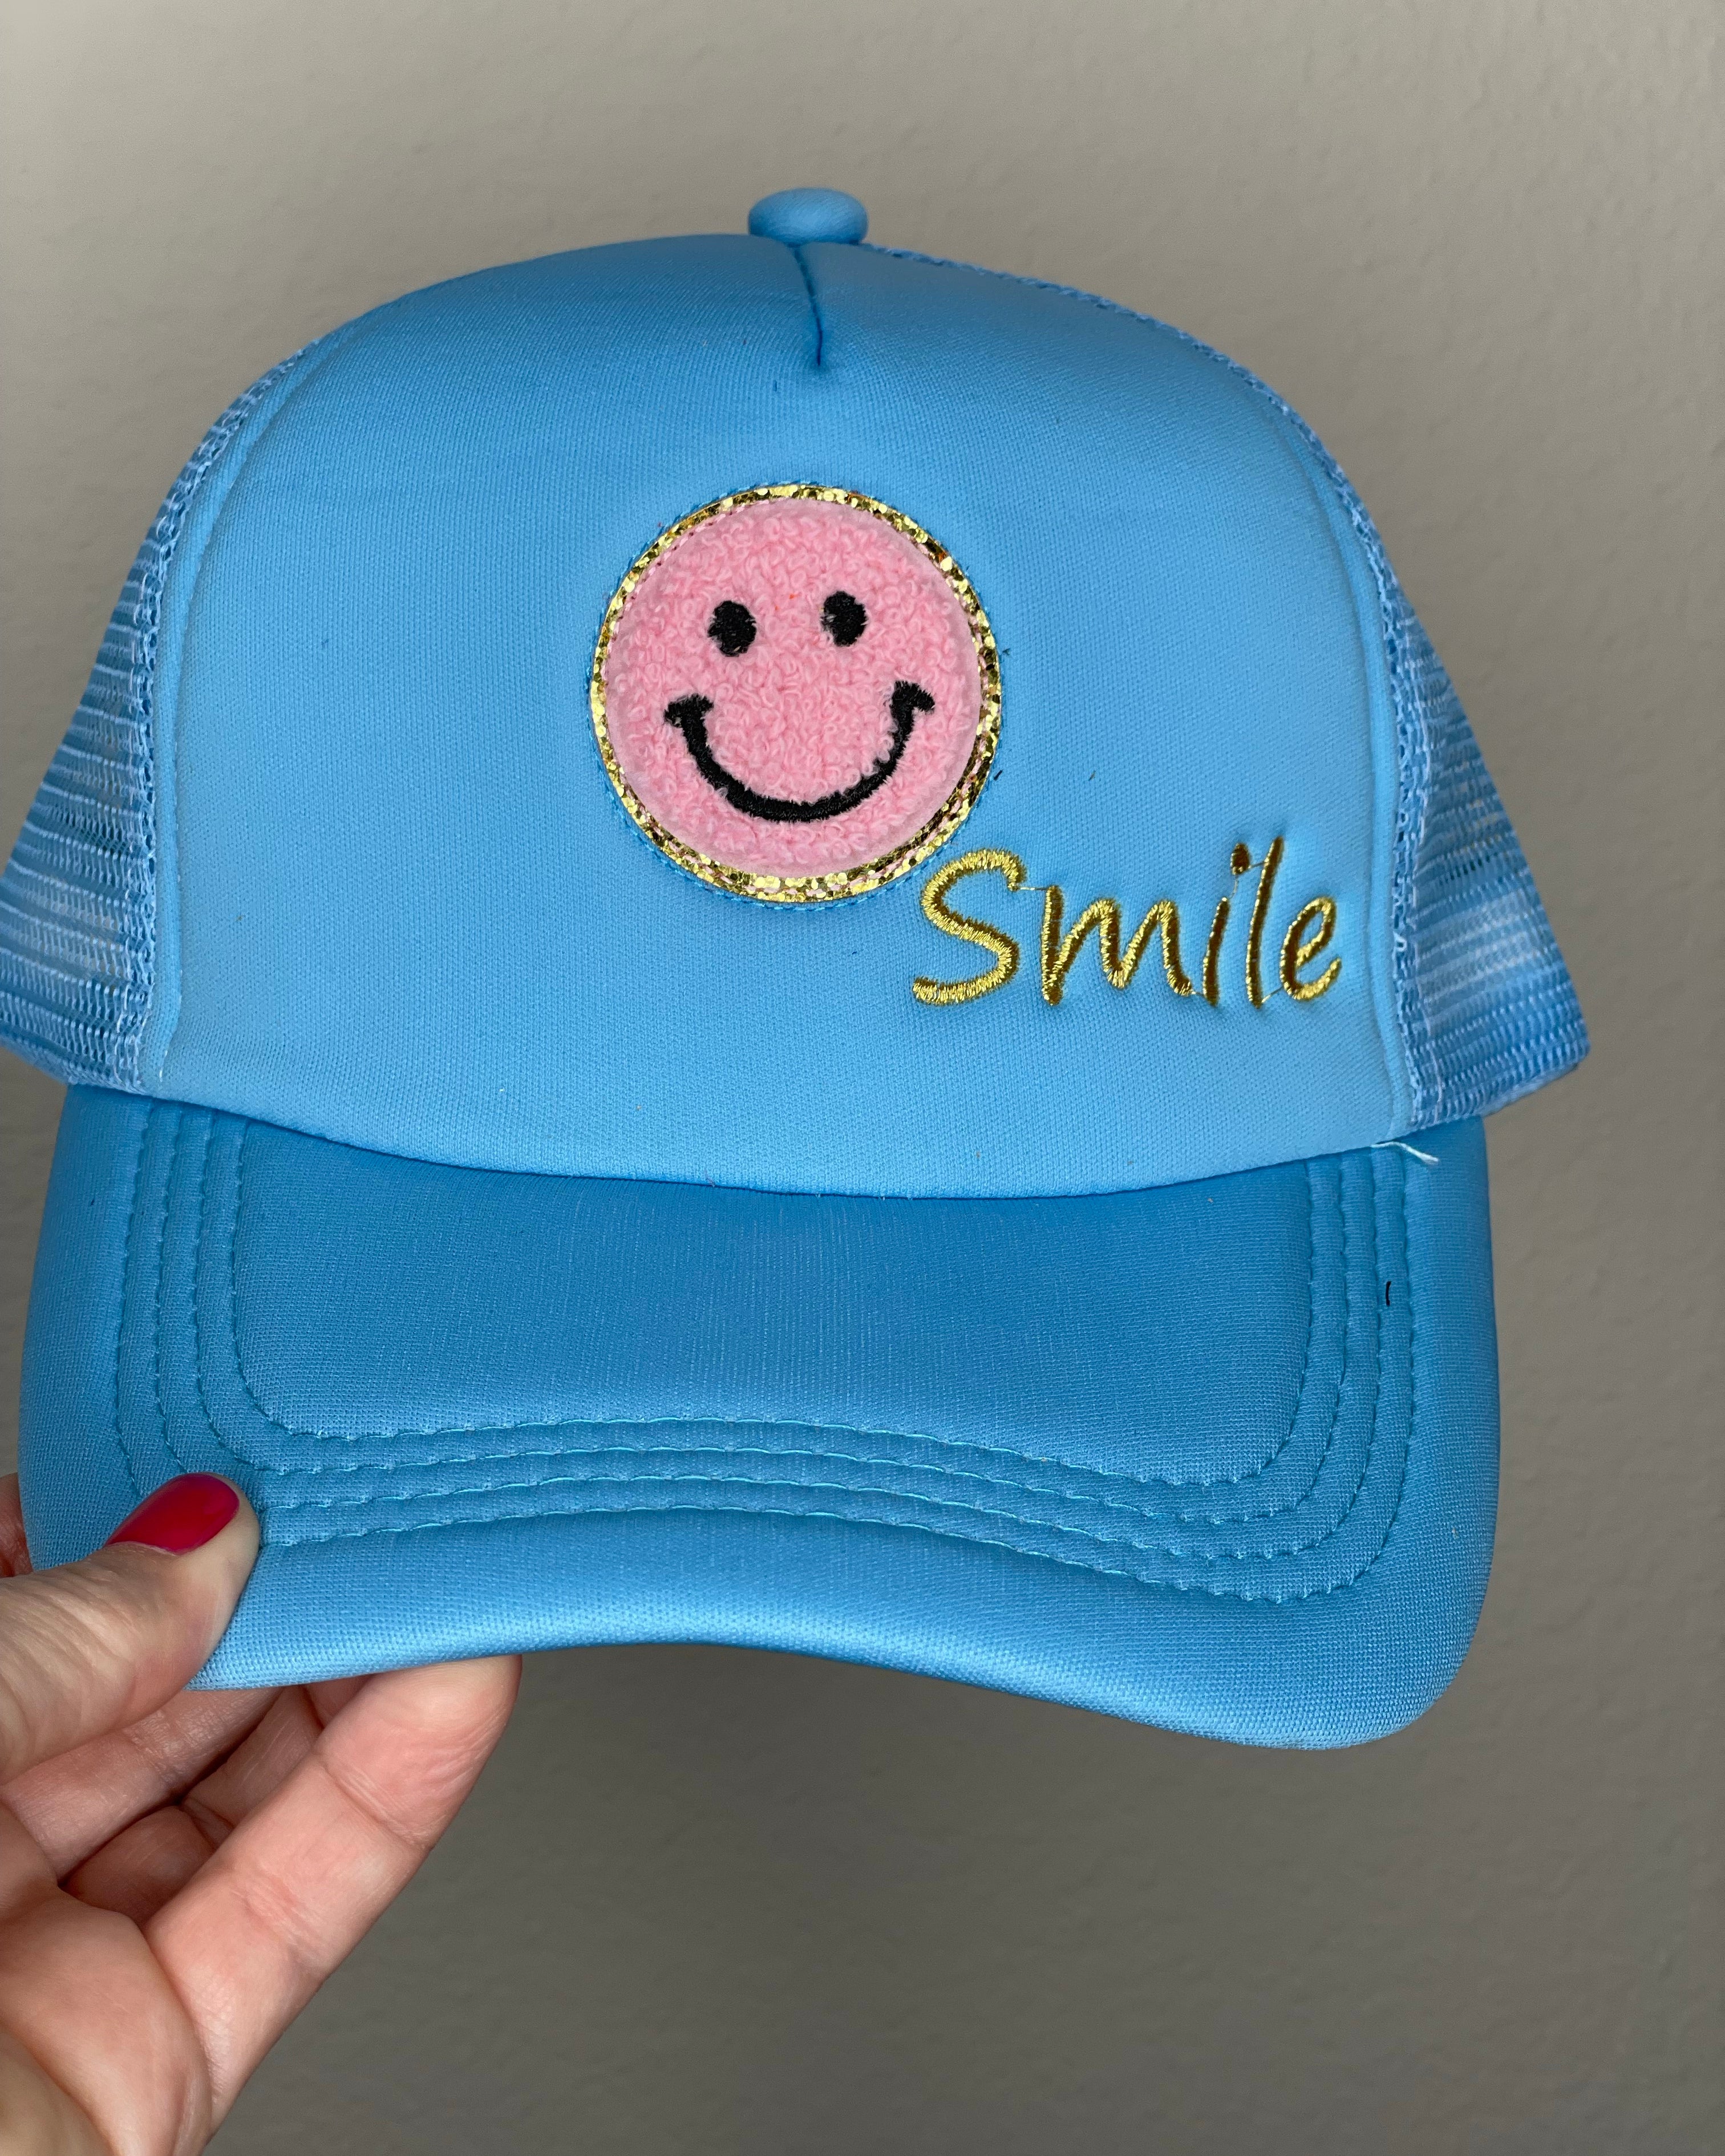 Smile Trucker Hat.